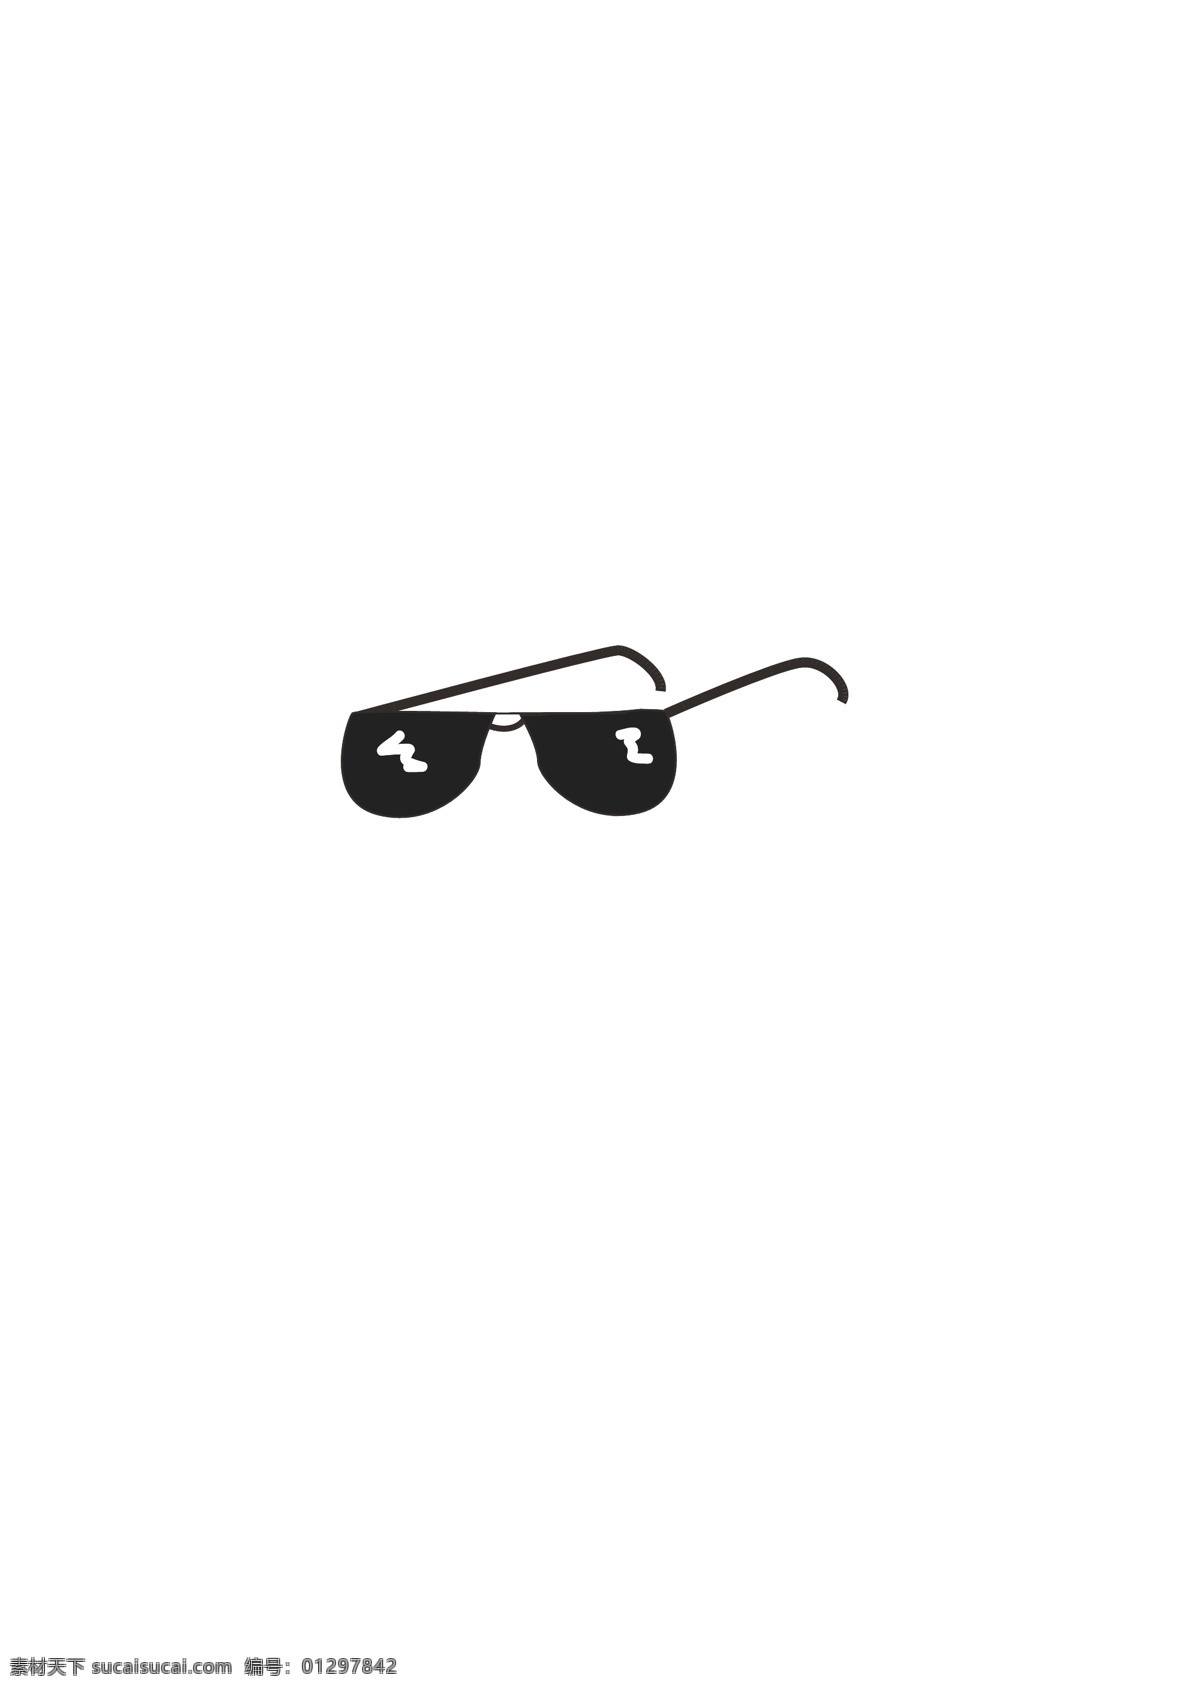 眼镜 墨镜 卡通 人物 夏天 酷 可爱 黑色